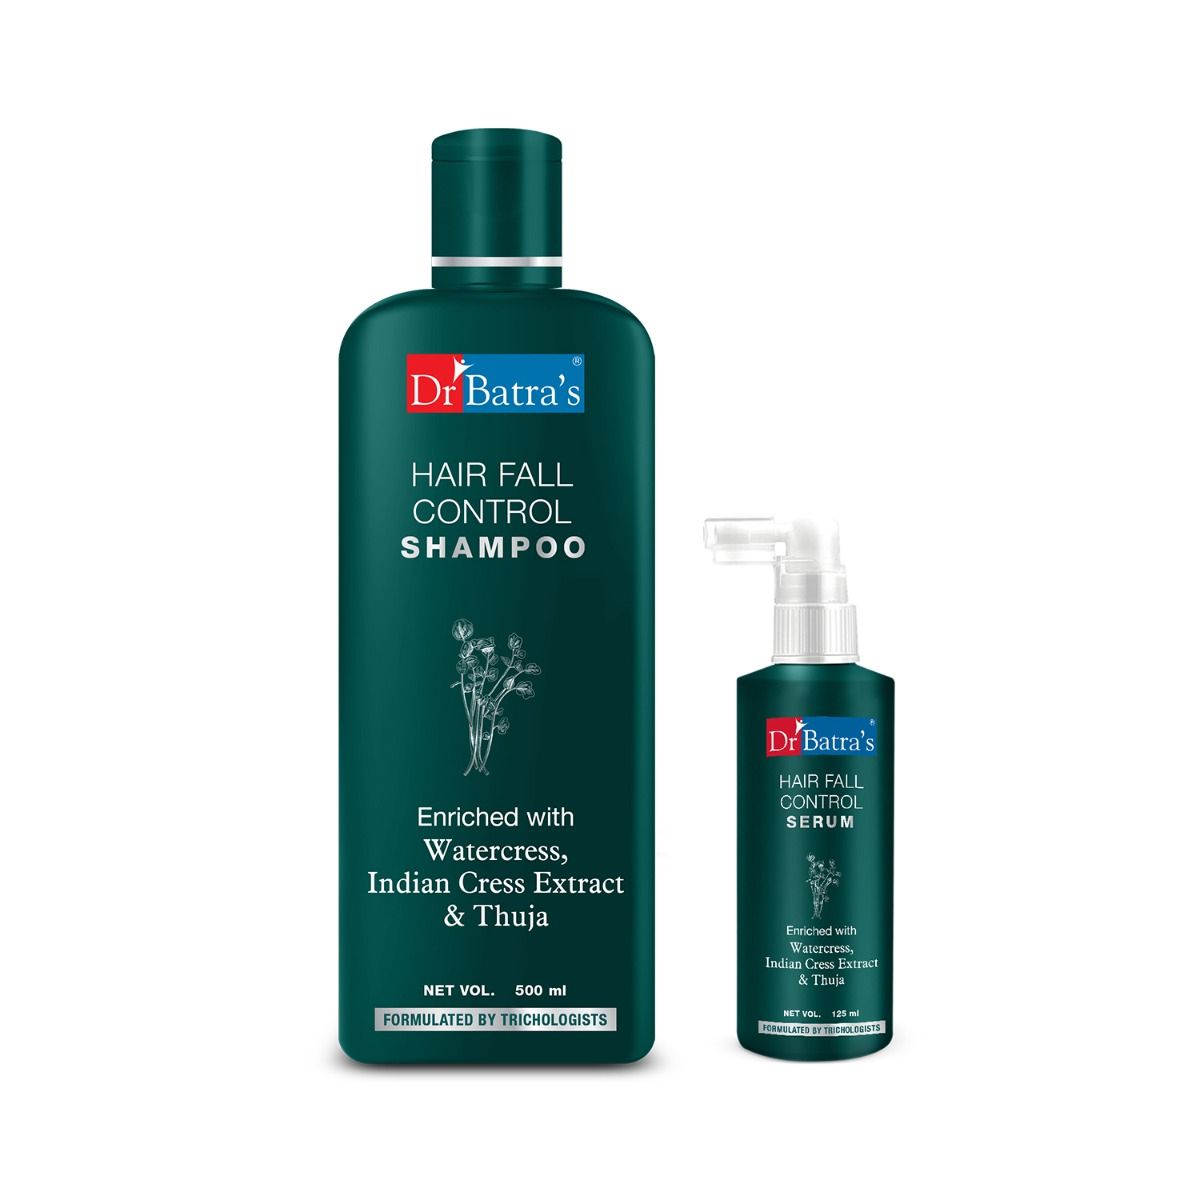     			Dr Batra's Hair Fall Control Serum-125 ml and Hair Fall Control Shampoo - 500 ml (Pack of 2)